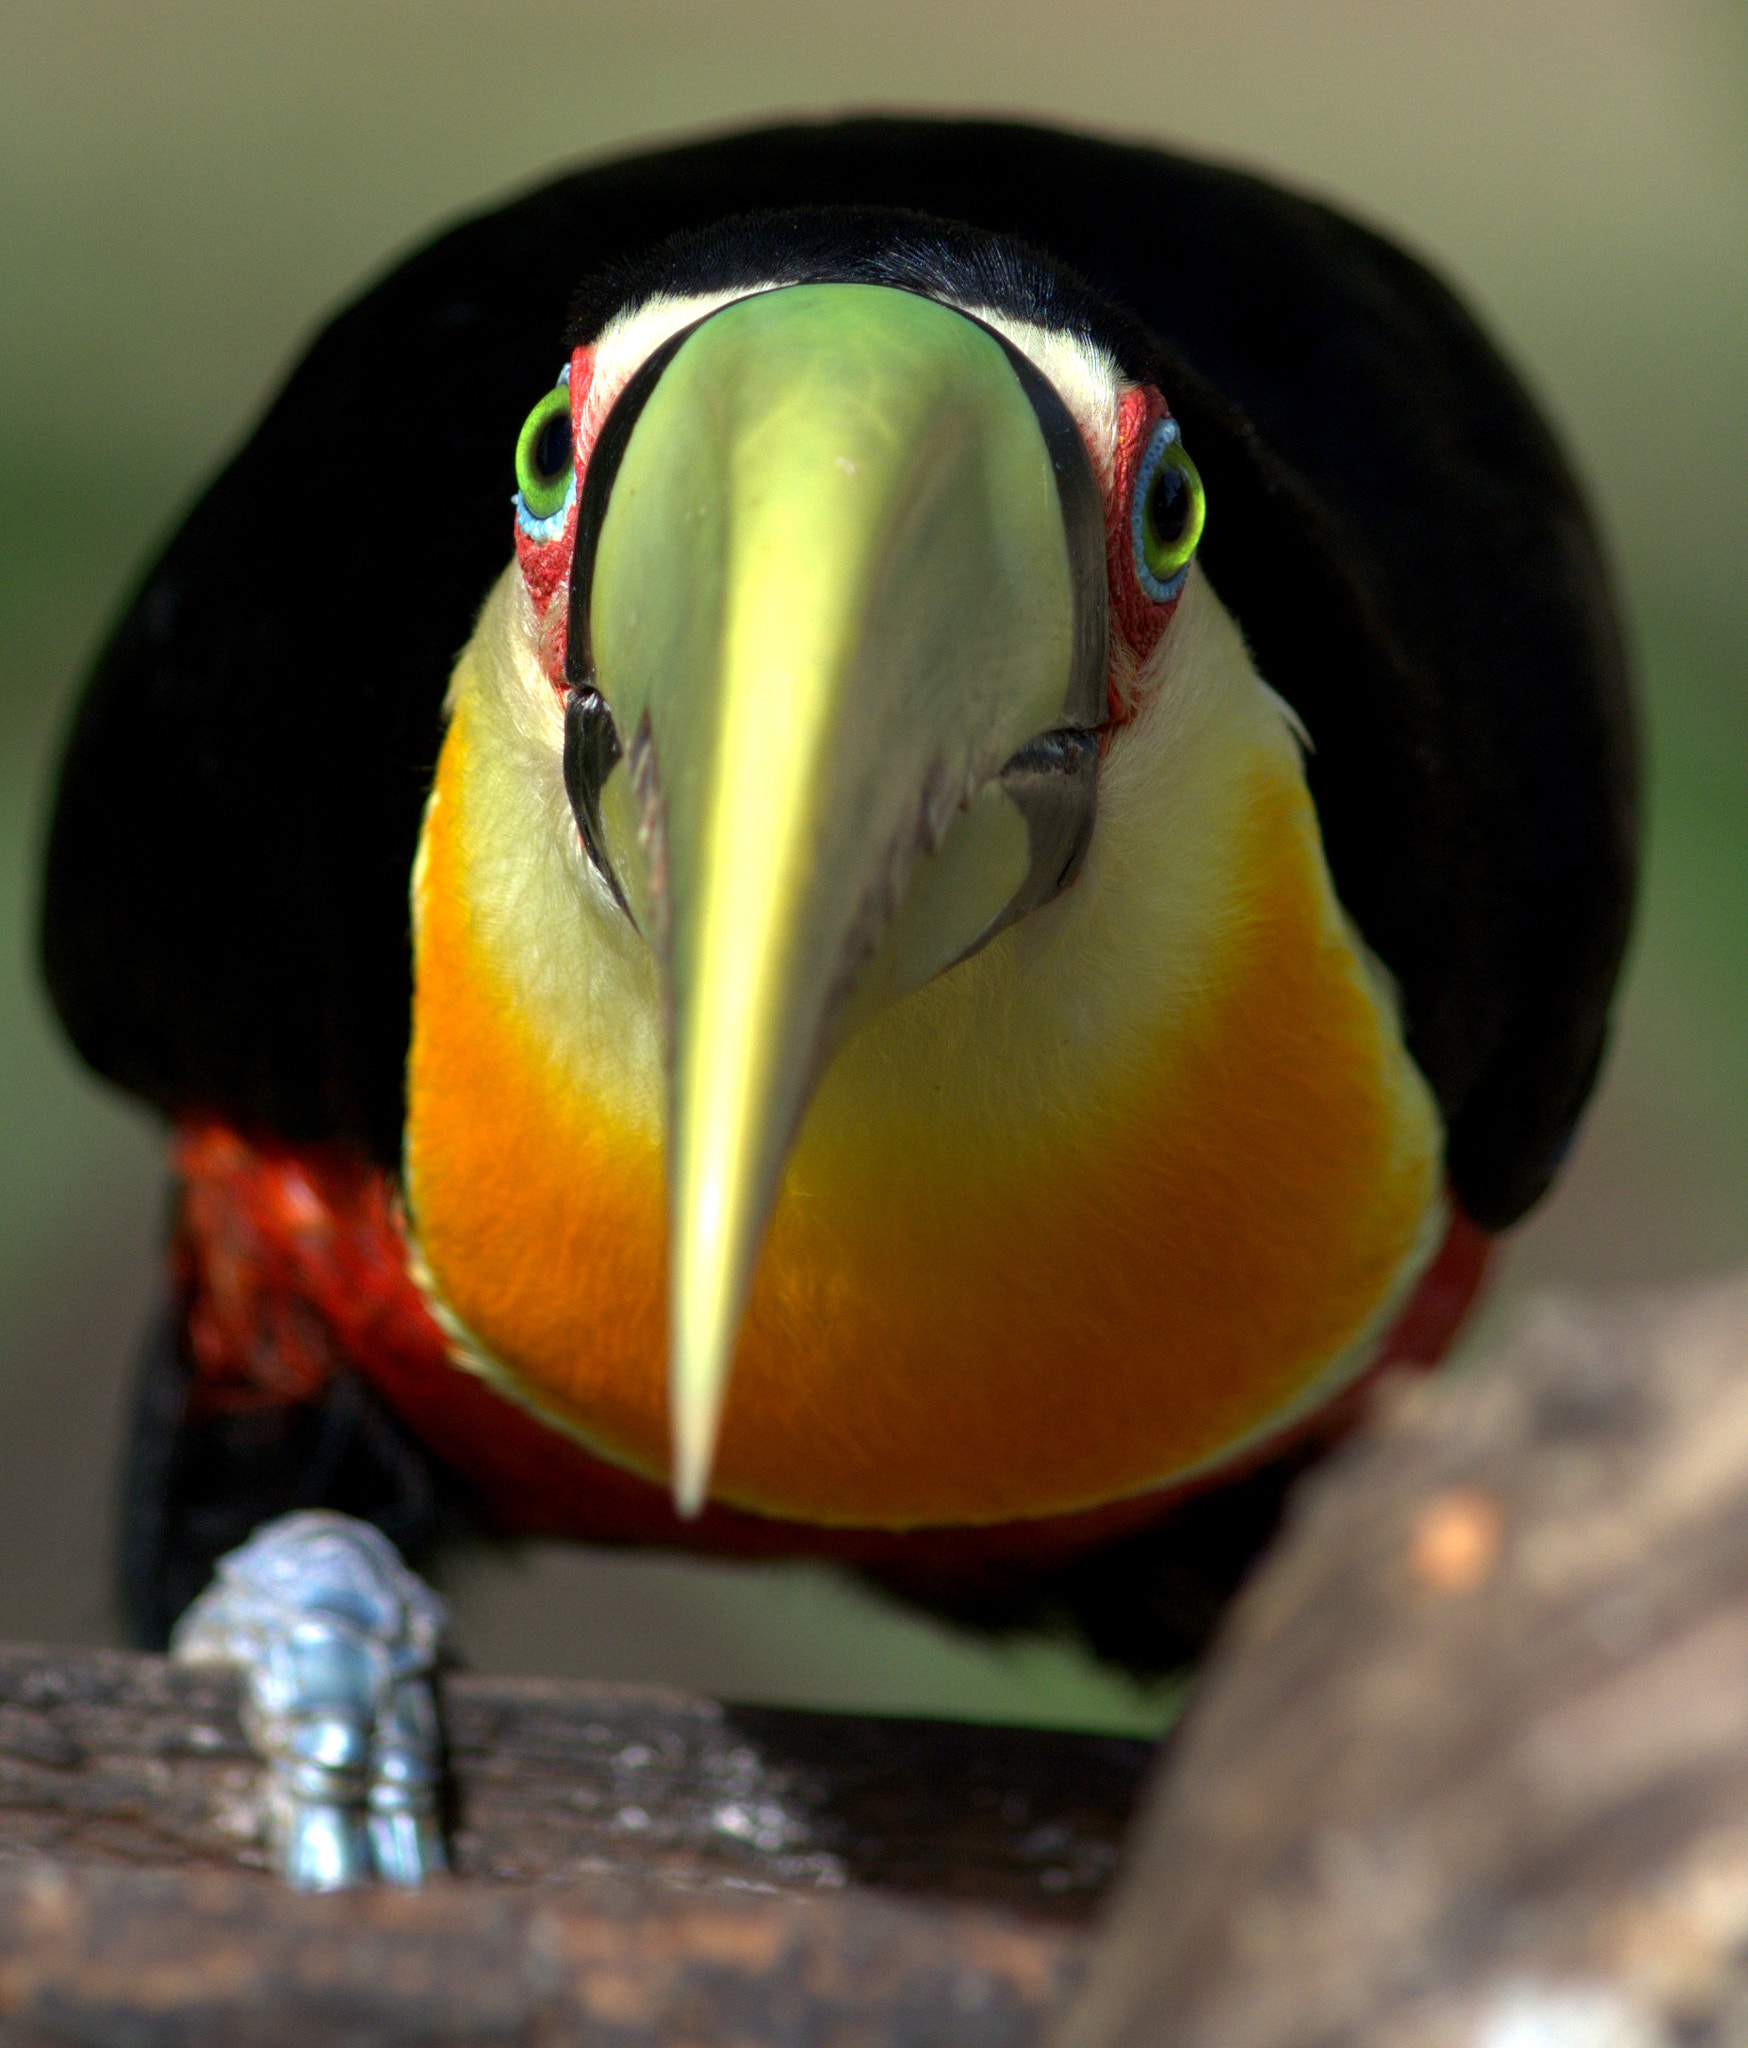 Nikon D7100 sample photo. Tucano de bico verde - ramphastos dicolorus - red-breasted toucan photography